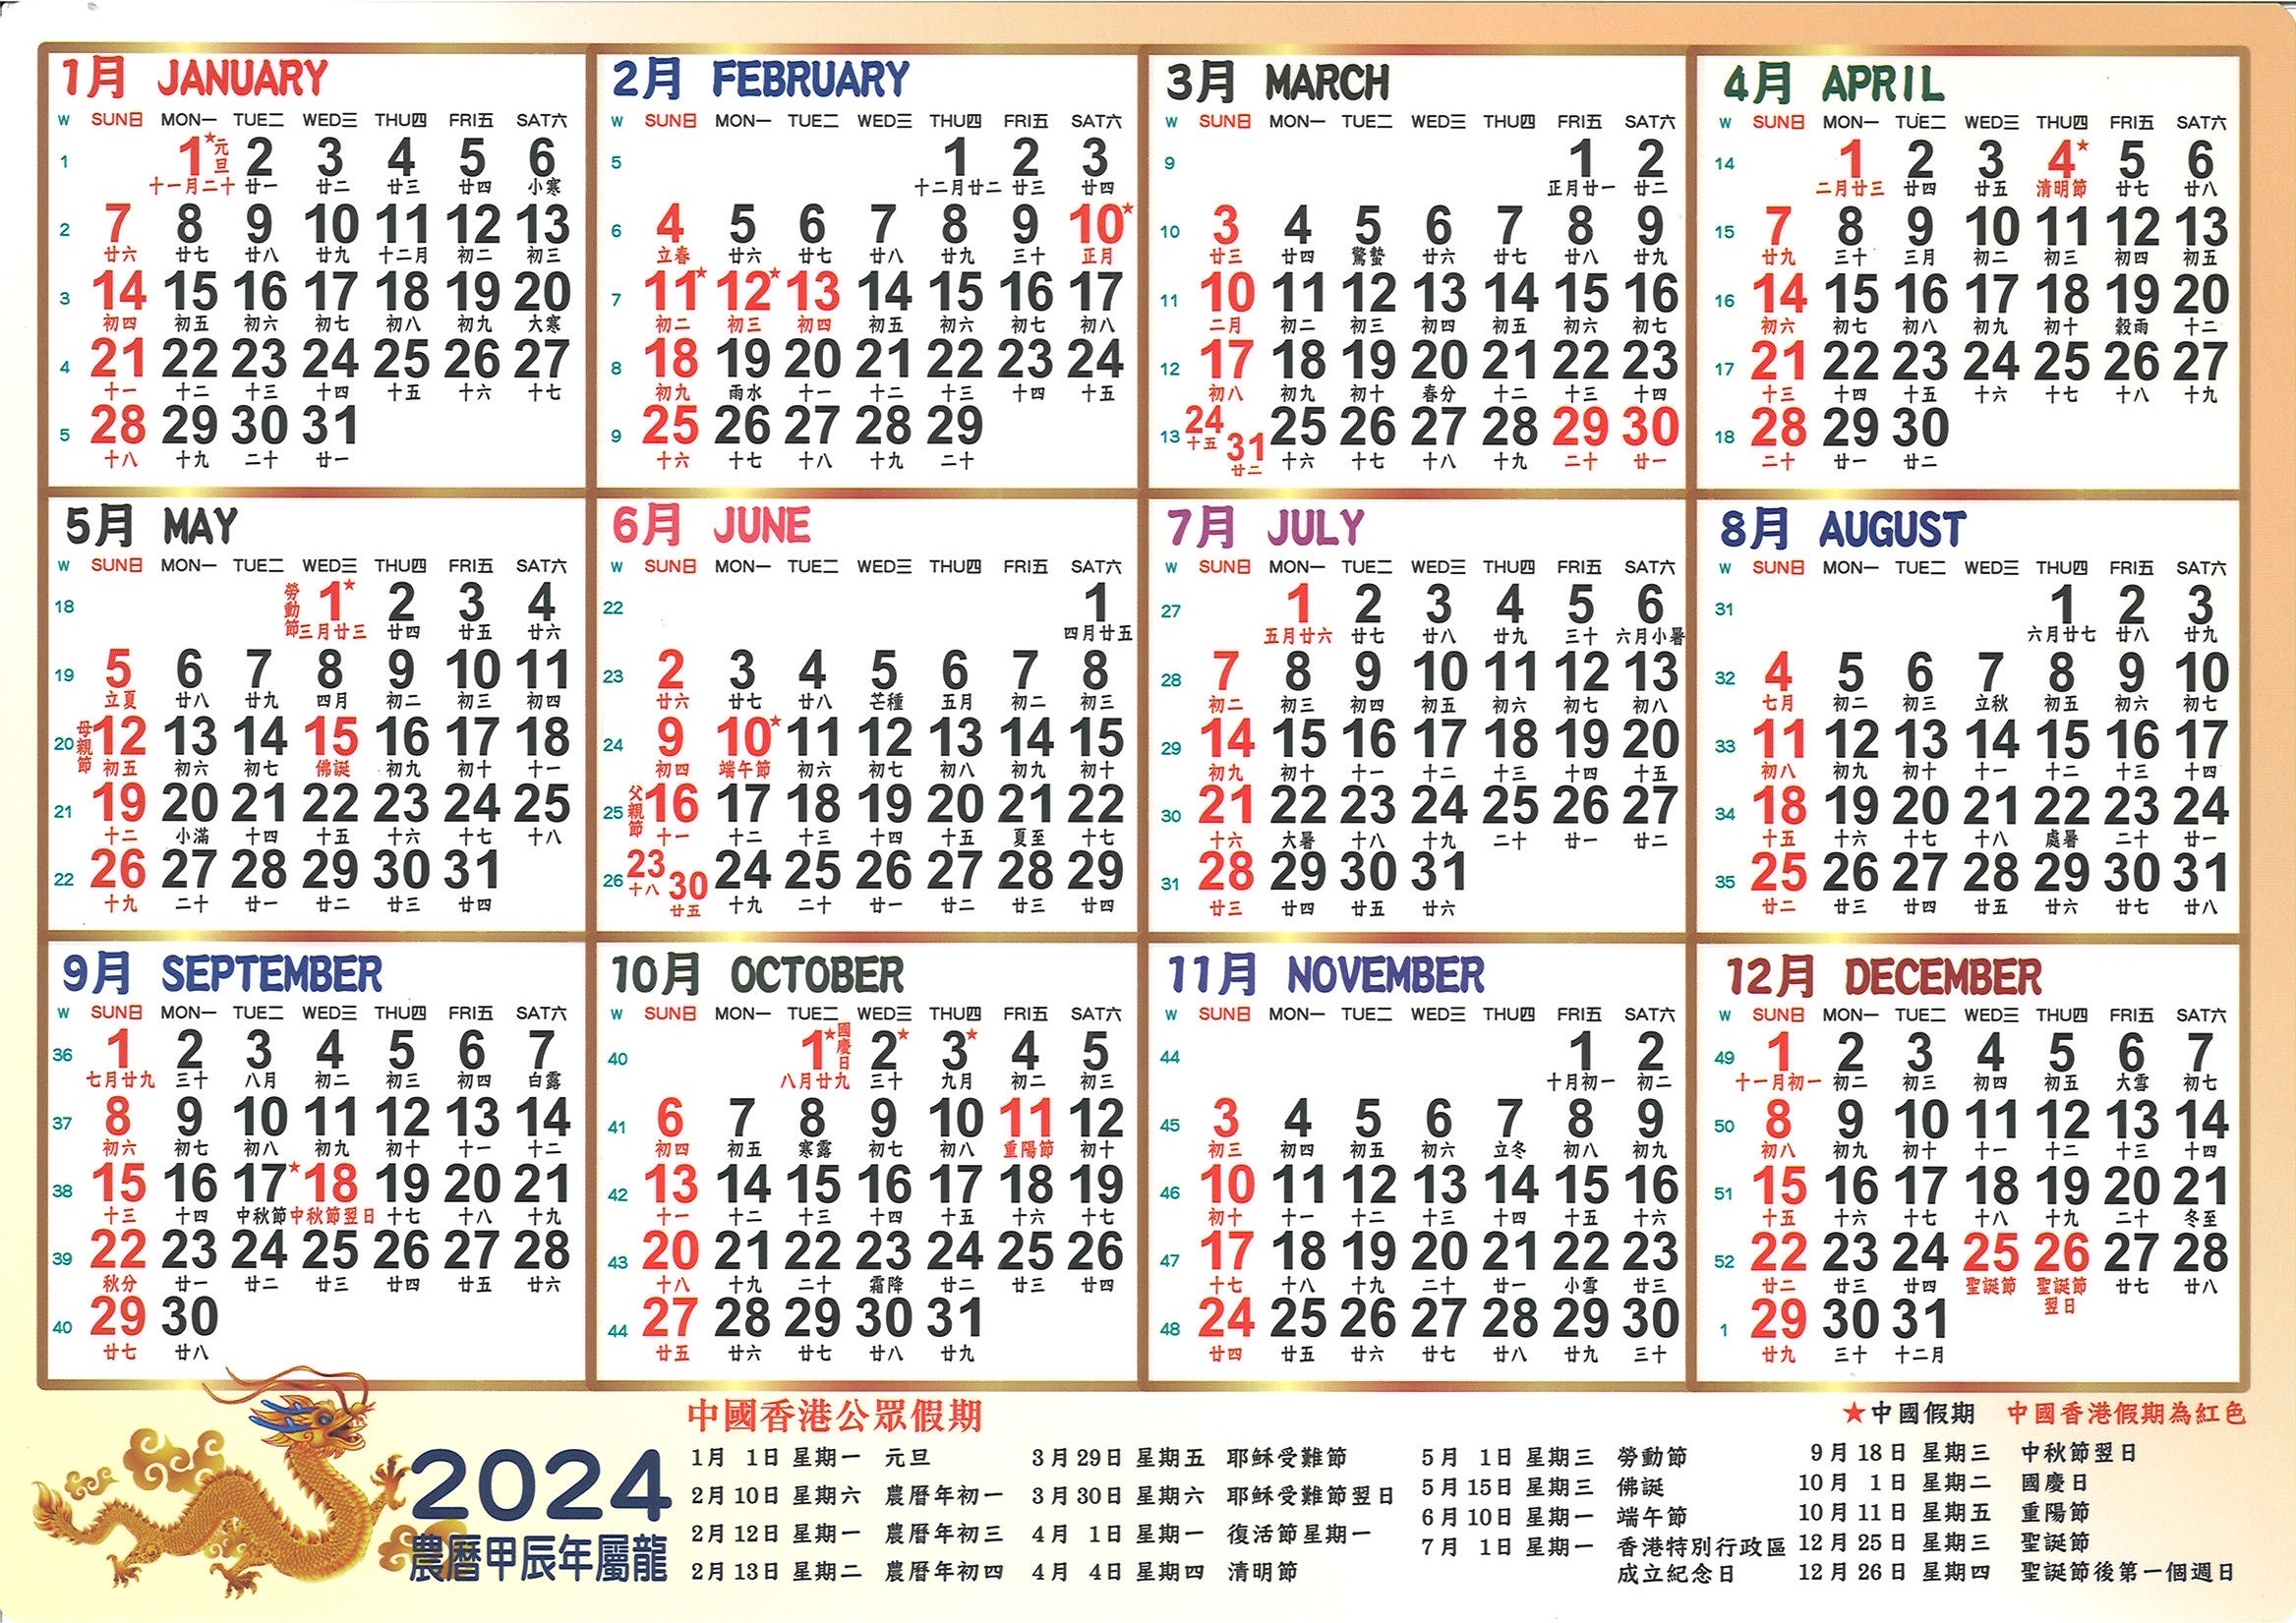 2024年大型年曆咭/ 中型年曆咭/ 細年曆咭 志成文具有限公司 CHI SHING STATIONERY CO., LTD.